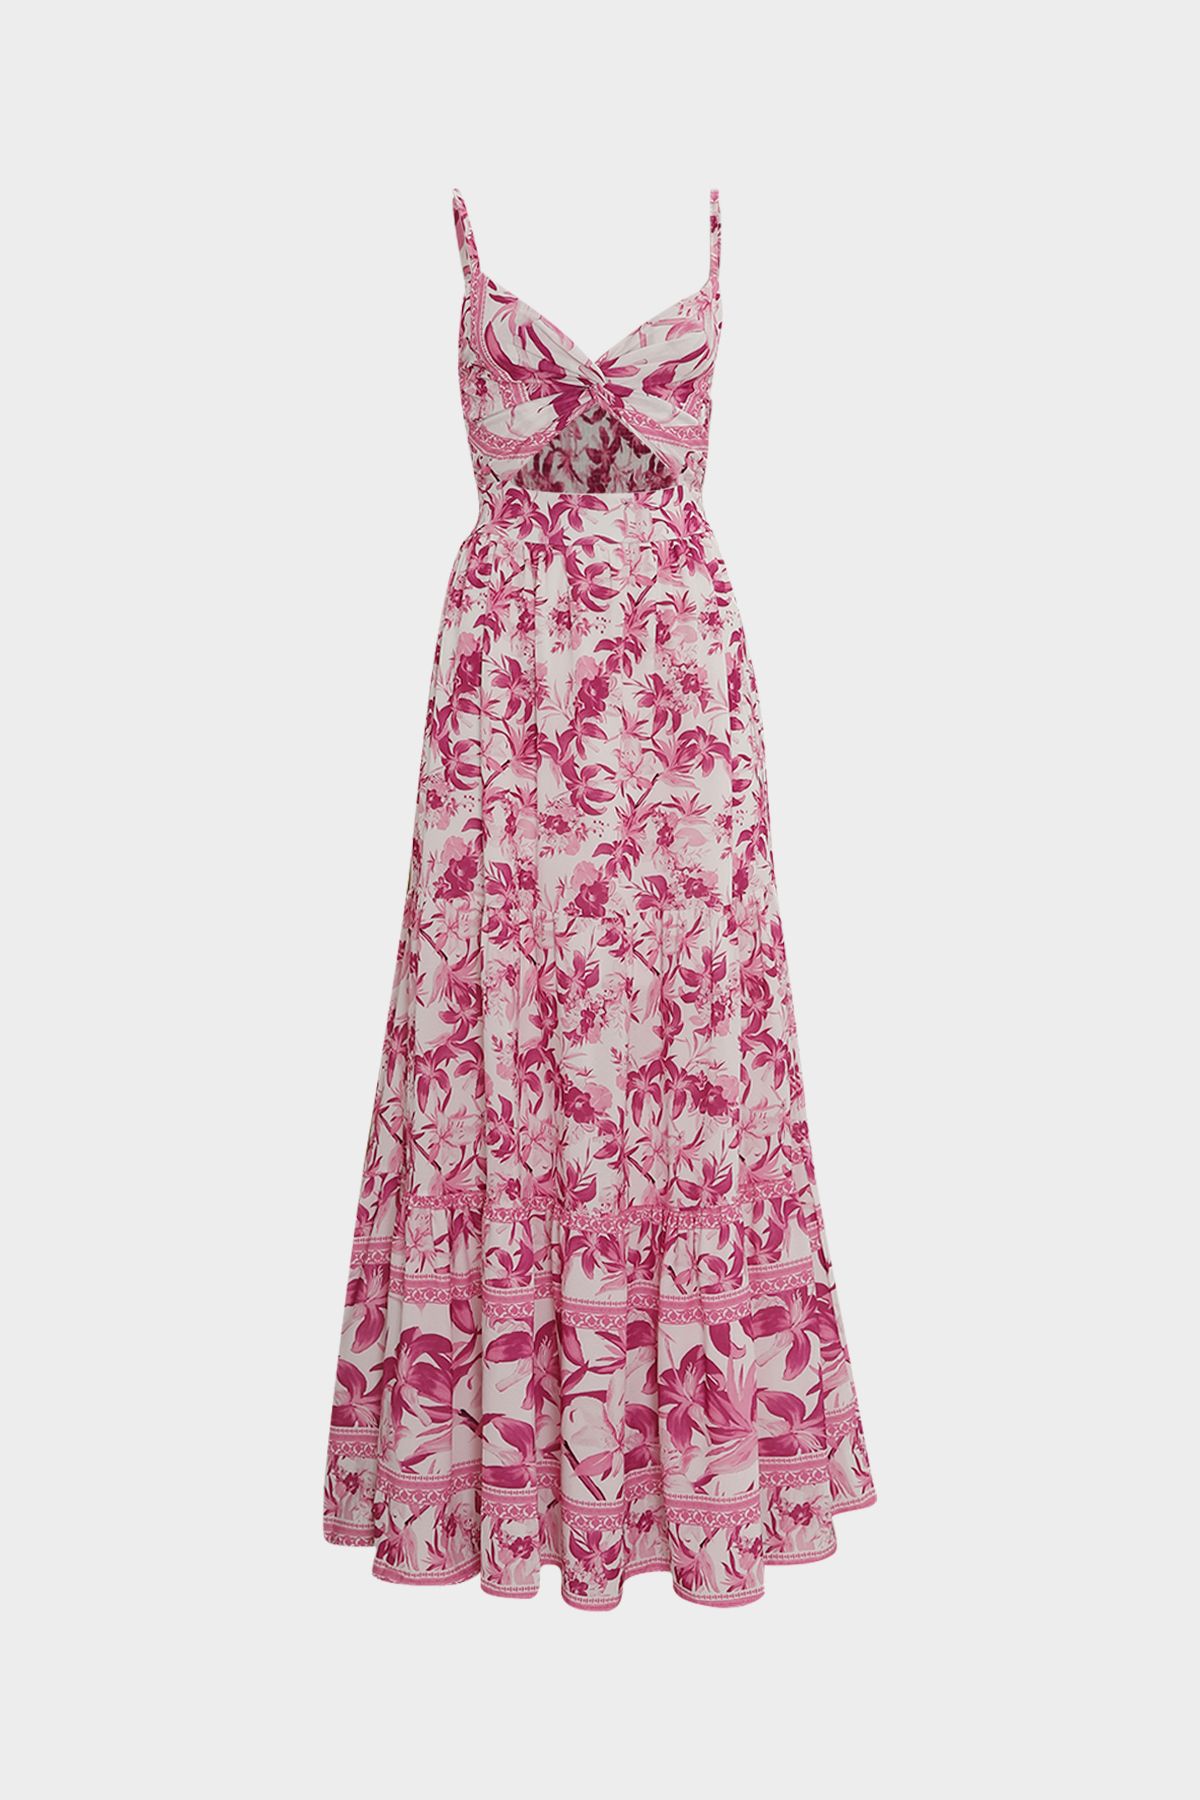 Açelya Okcu Premium Sırtı Gipe Detaylı Cut Out Çiçek Desenli Maksi Kadın Elbise